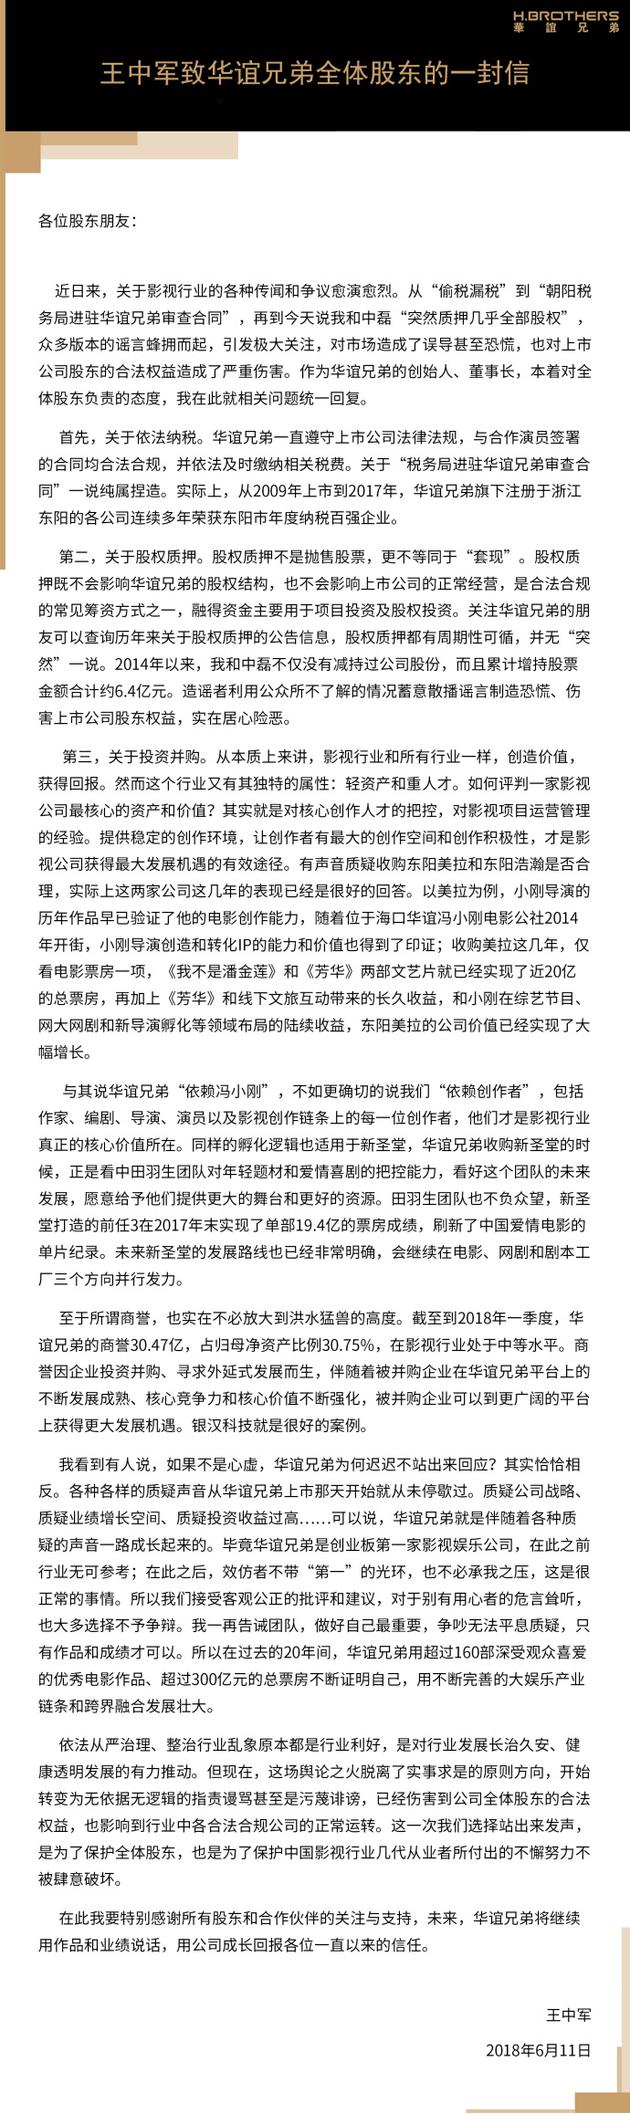 华谊兄弟董事长王中军致全体股东的一封信 